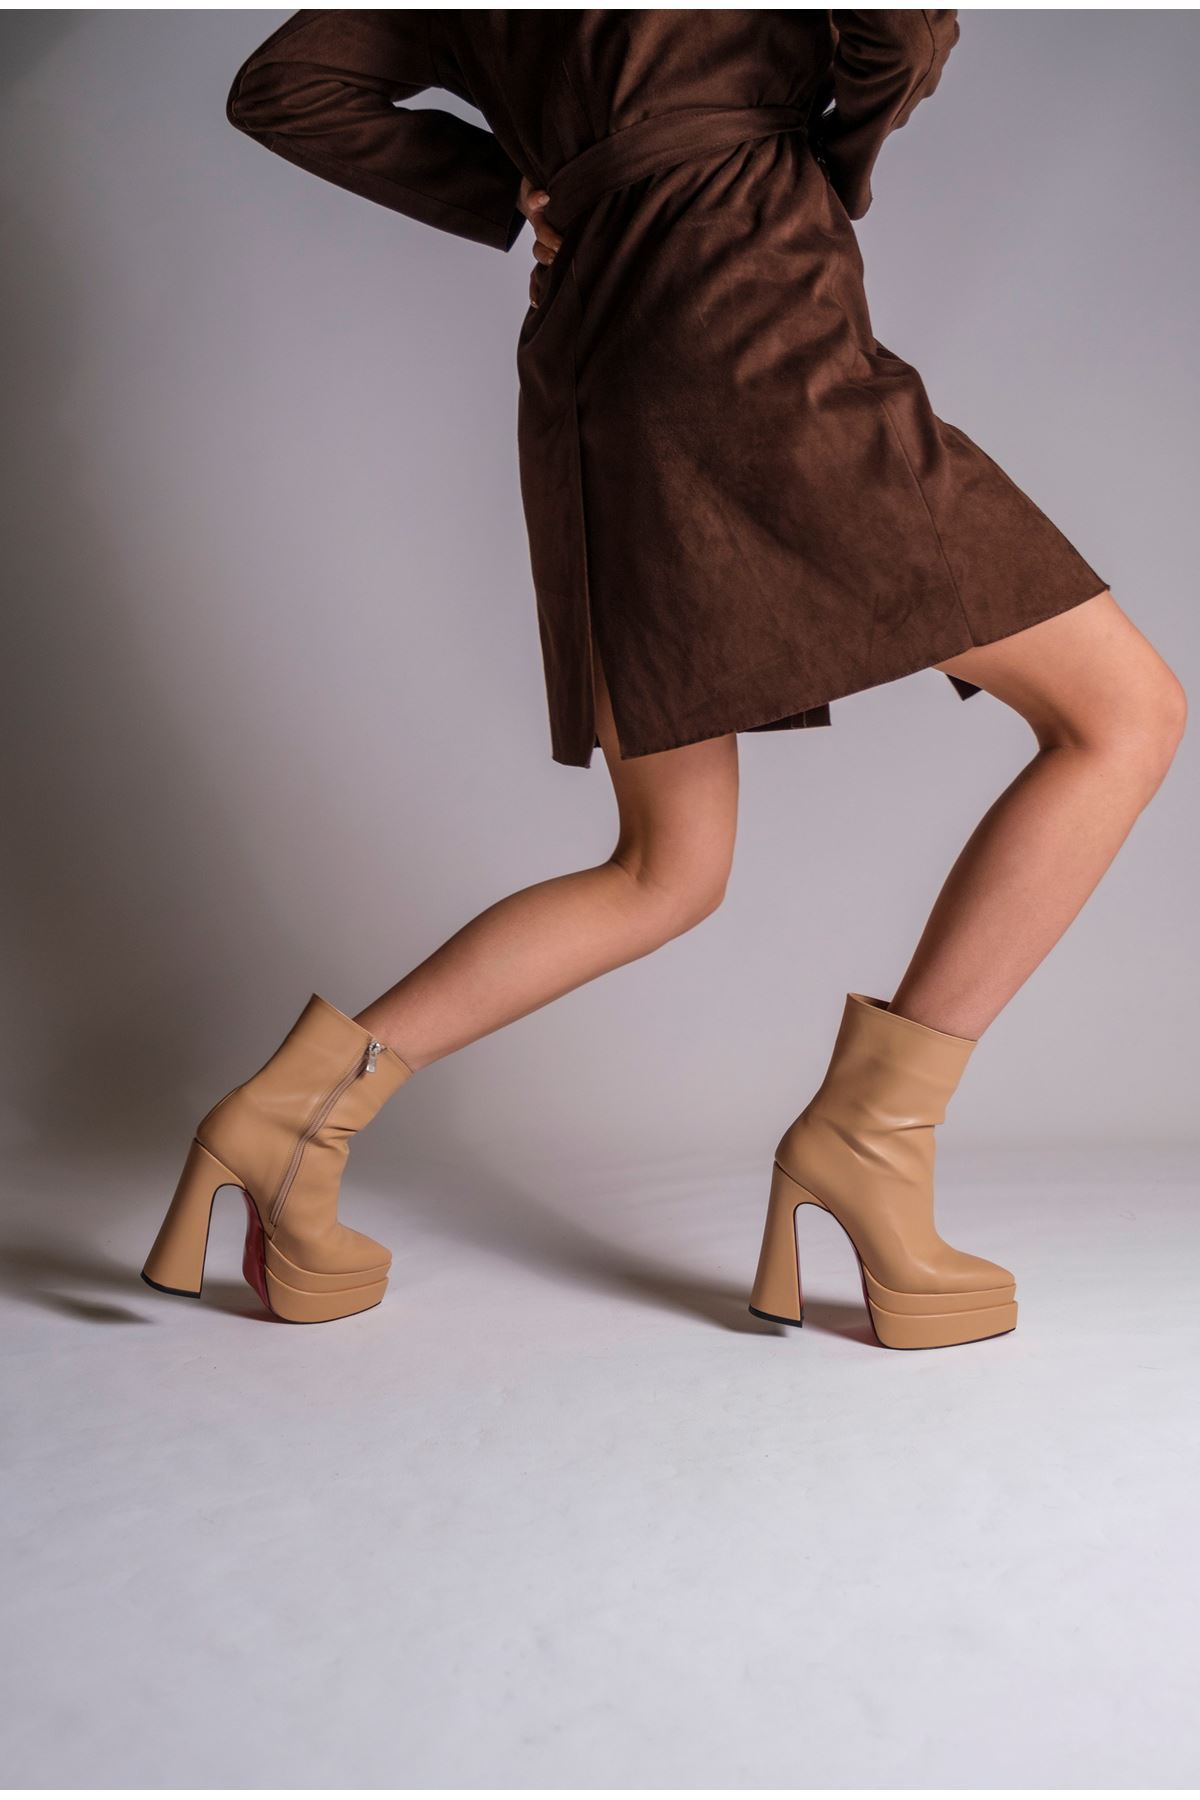 Nude Cilt  Çift  Platform Özel Tasarım Kadın Bot Ayakkabı Mojo